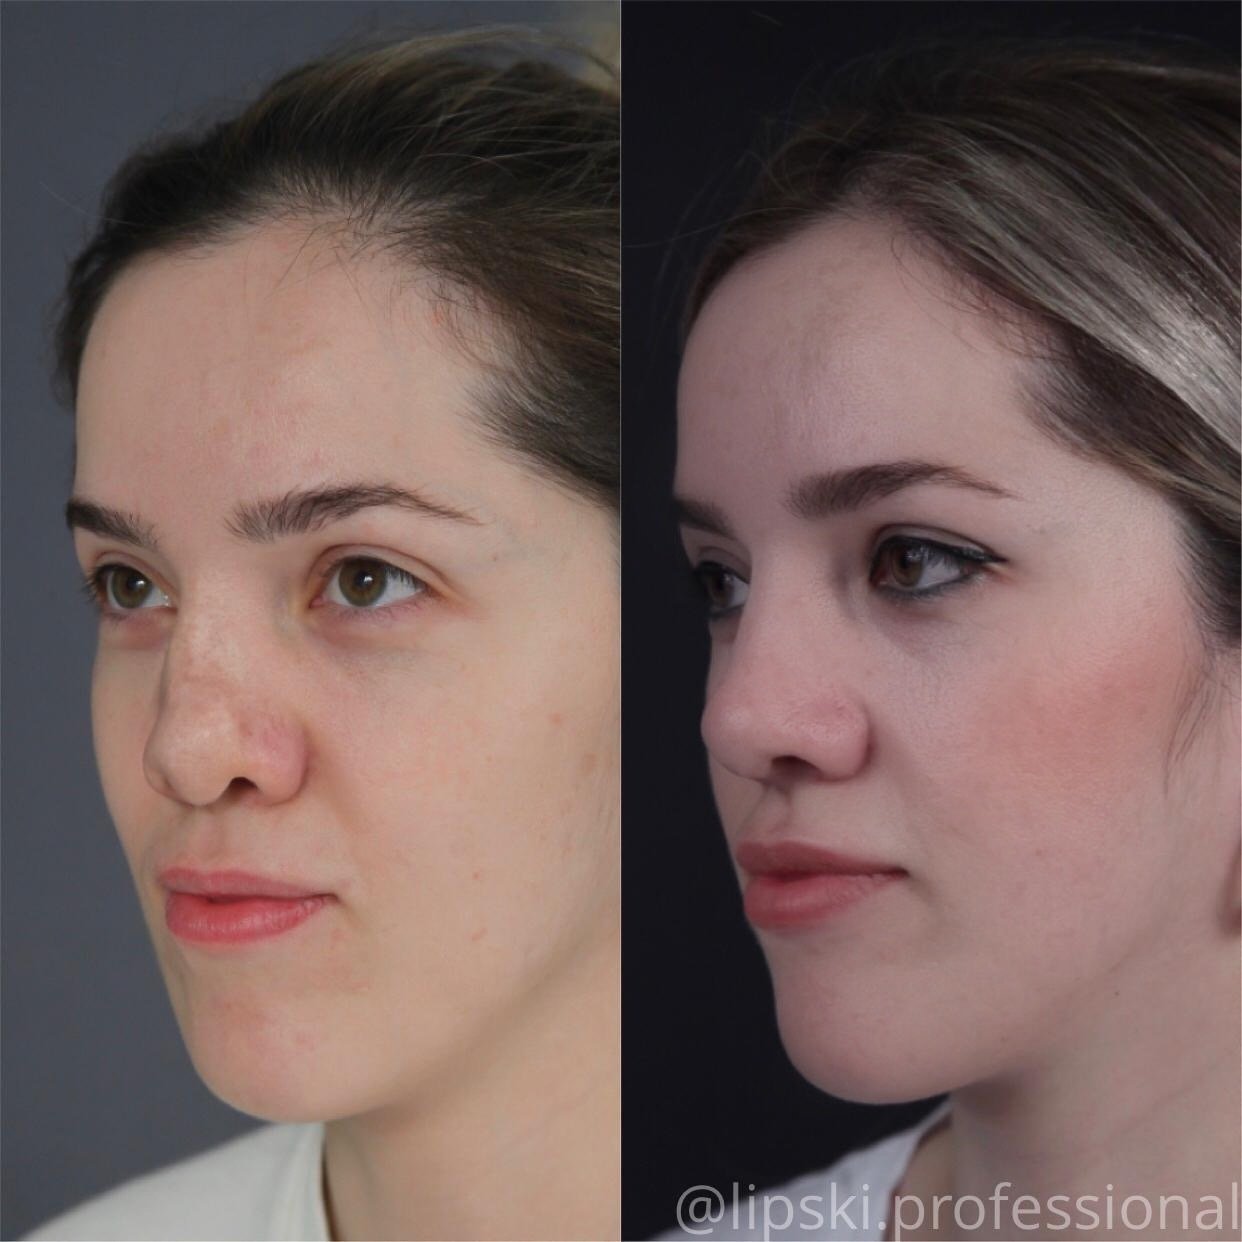 Ринопластика курносого носа до и после фото